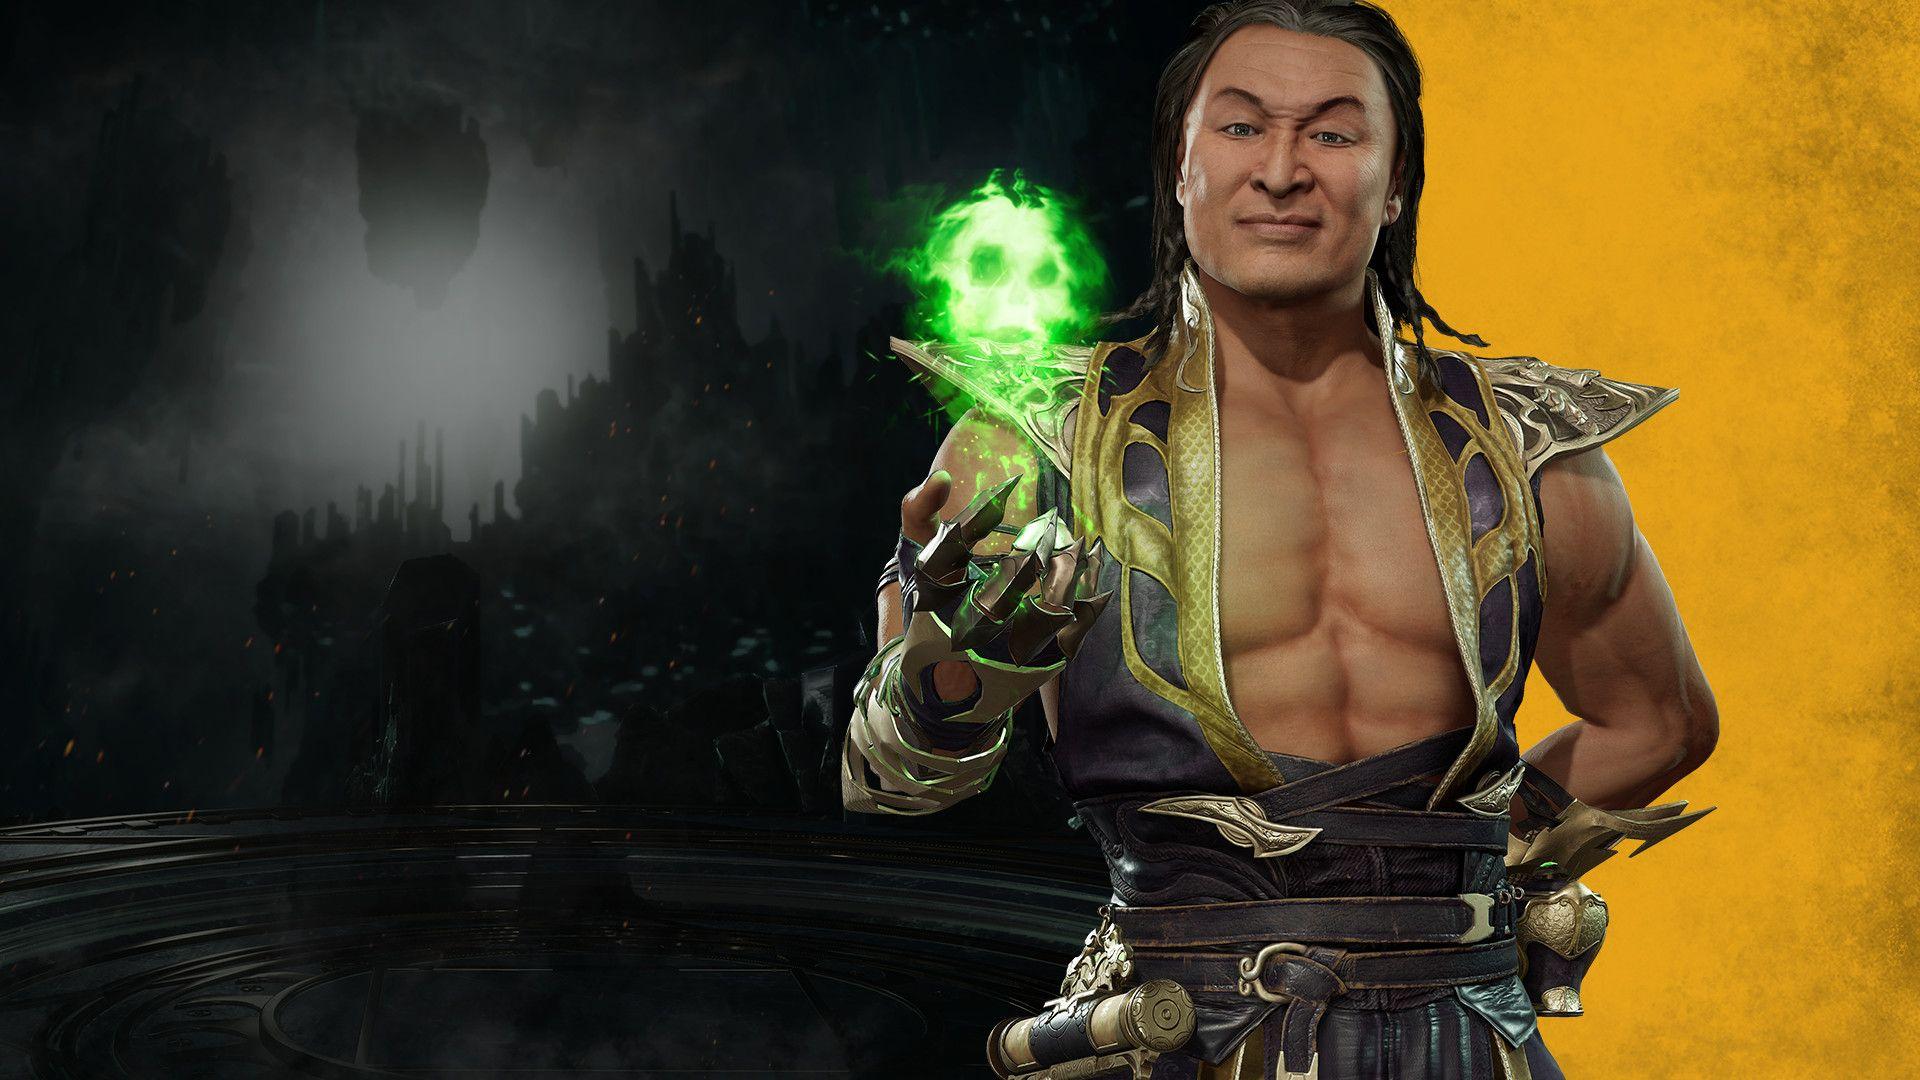 Shang Tsung Mortal Kombat Wallpapers Top Free Shang Tsung Mortal Kombat Backgrounds